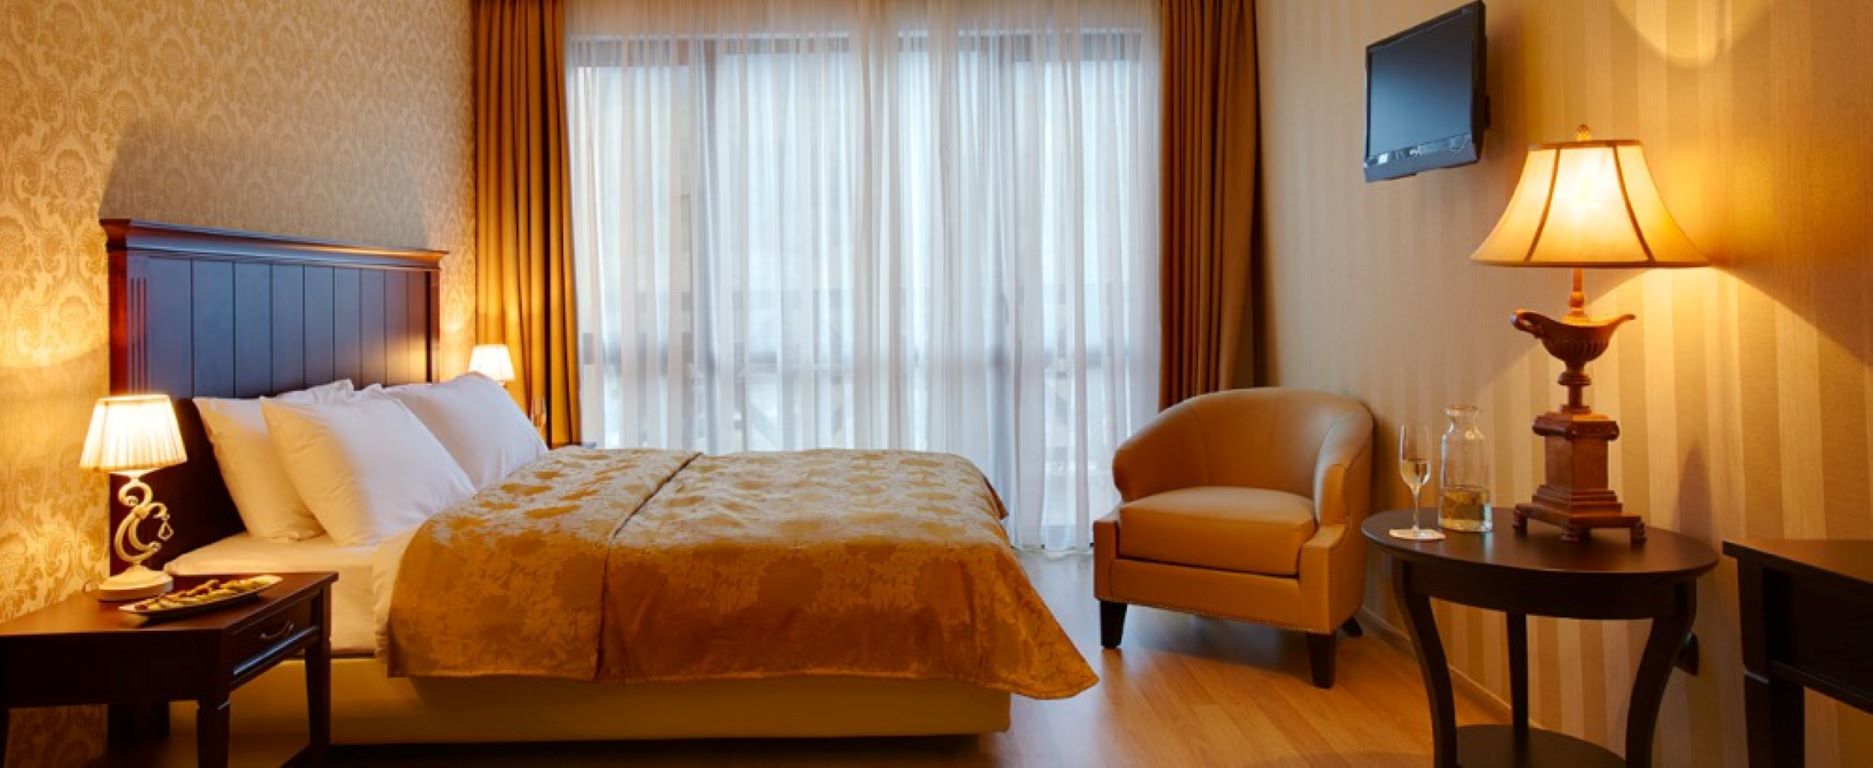 Premier luxury Resort - single room.jpg